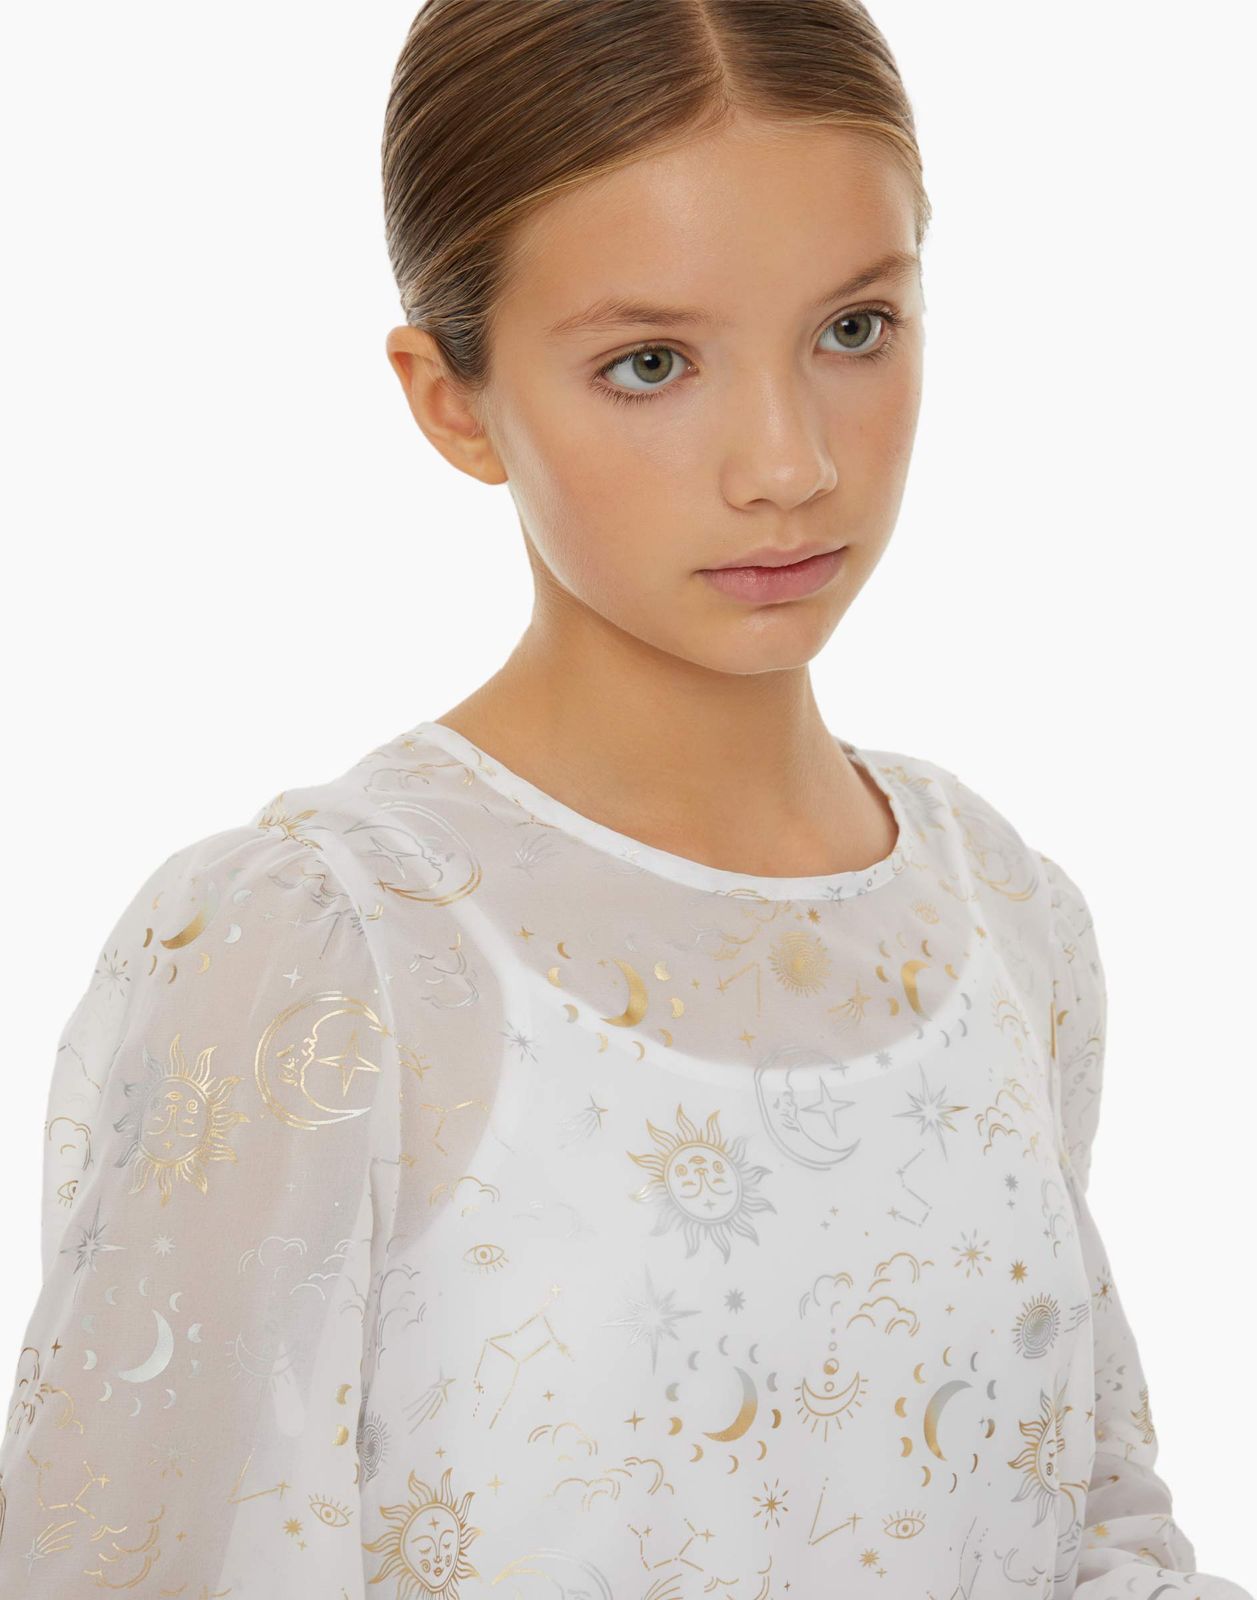 Блузка детская Gloria Jeans GWT003255, белый/разноцветный, 140